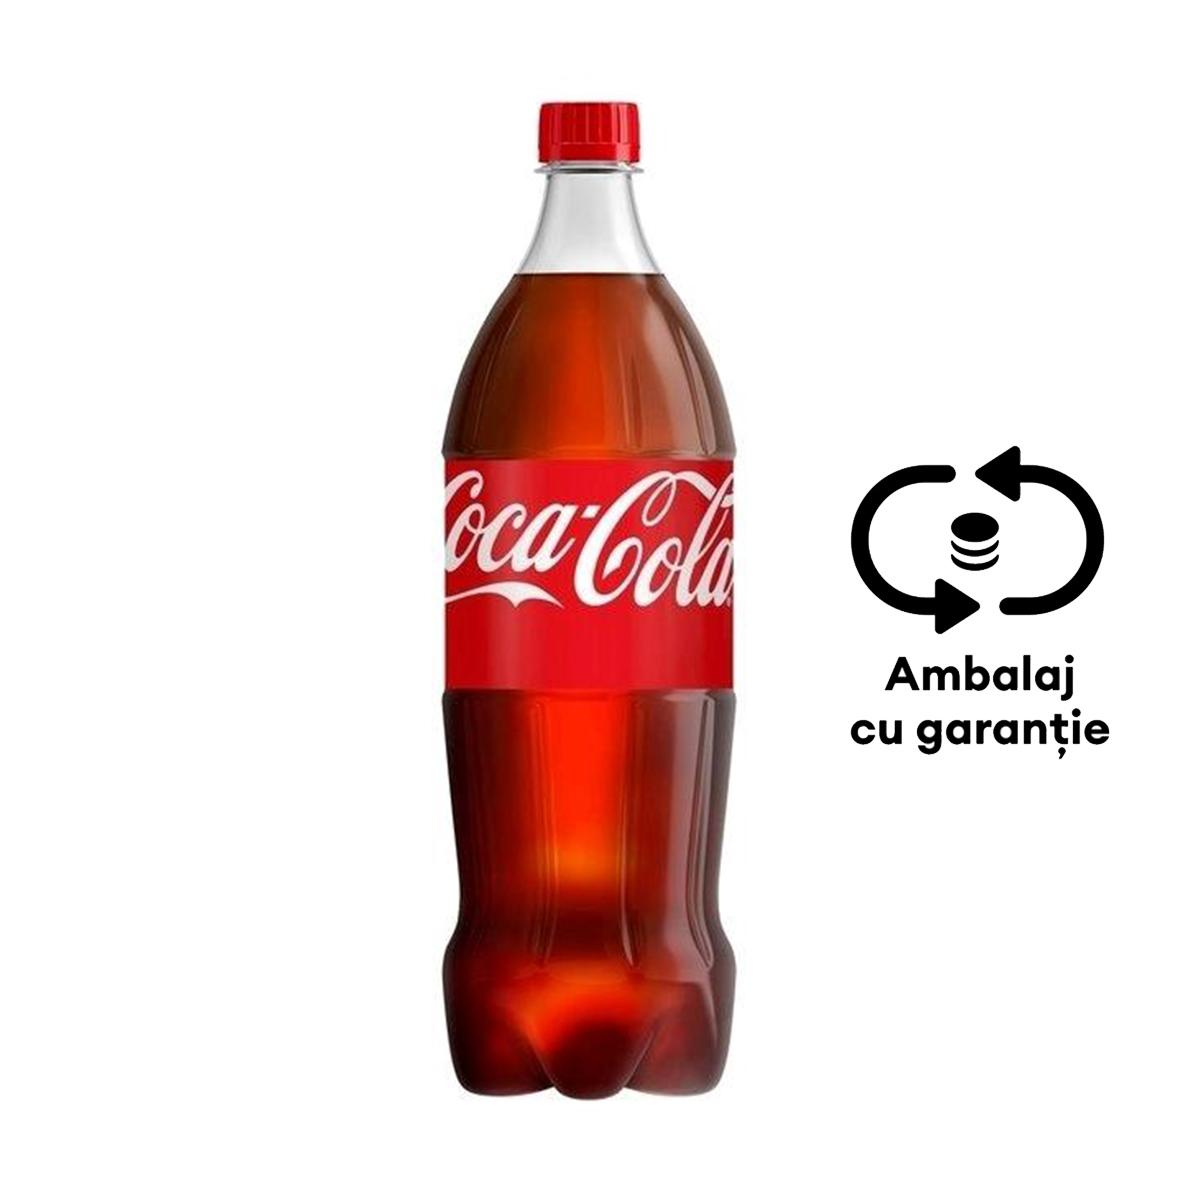 Bautura racoritoare carbogazoasa Coca-Cola, 1.25 l, 6 bucati/bax, eticheta SGR